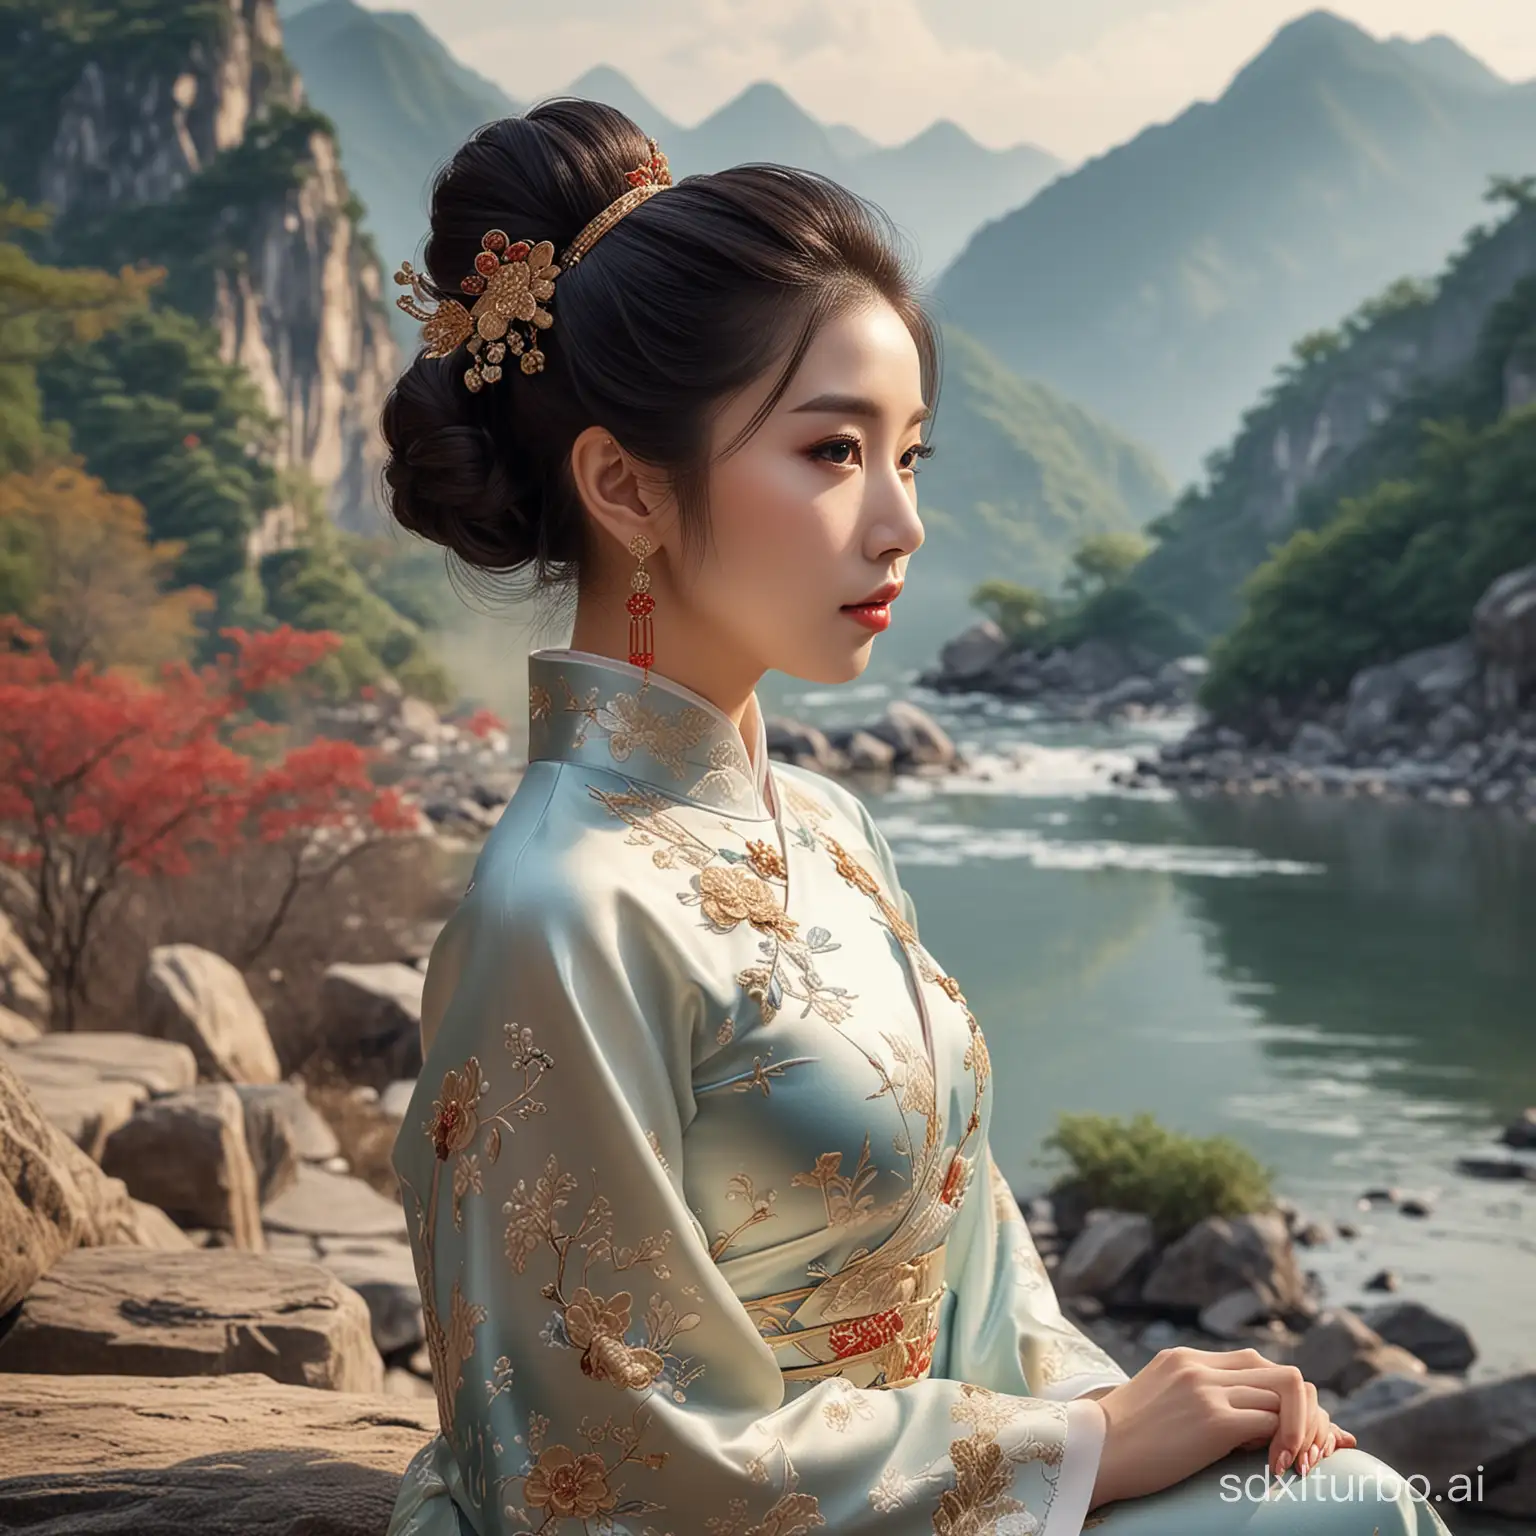 性感女神，妩媚清纯，高端中国风旗袍，发髻精美，细节丰富，高清图，背景山水之间